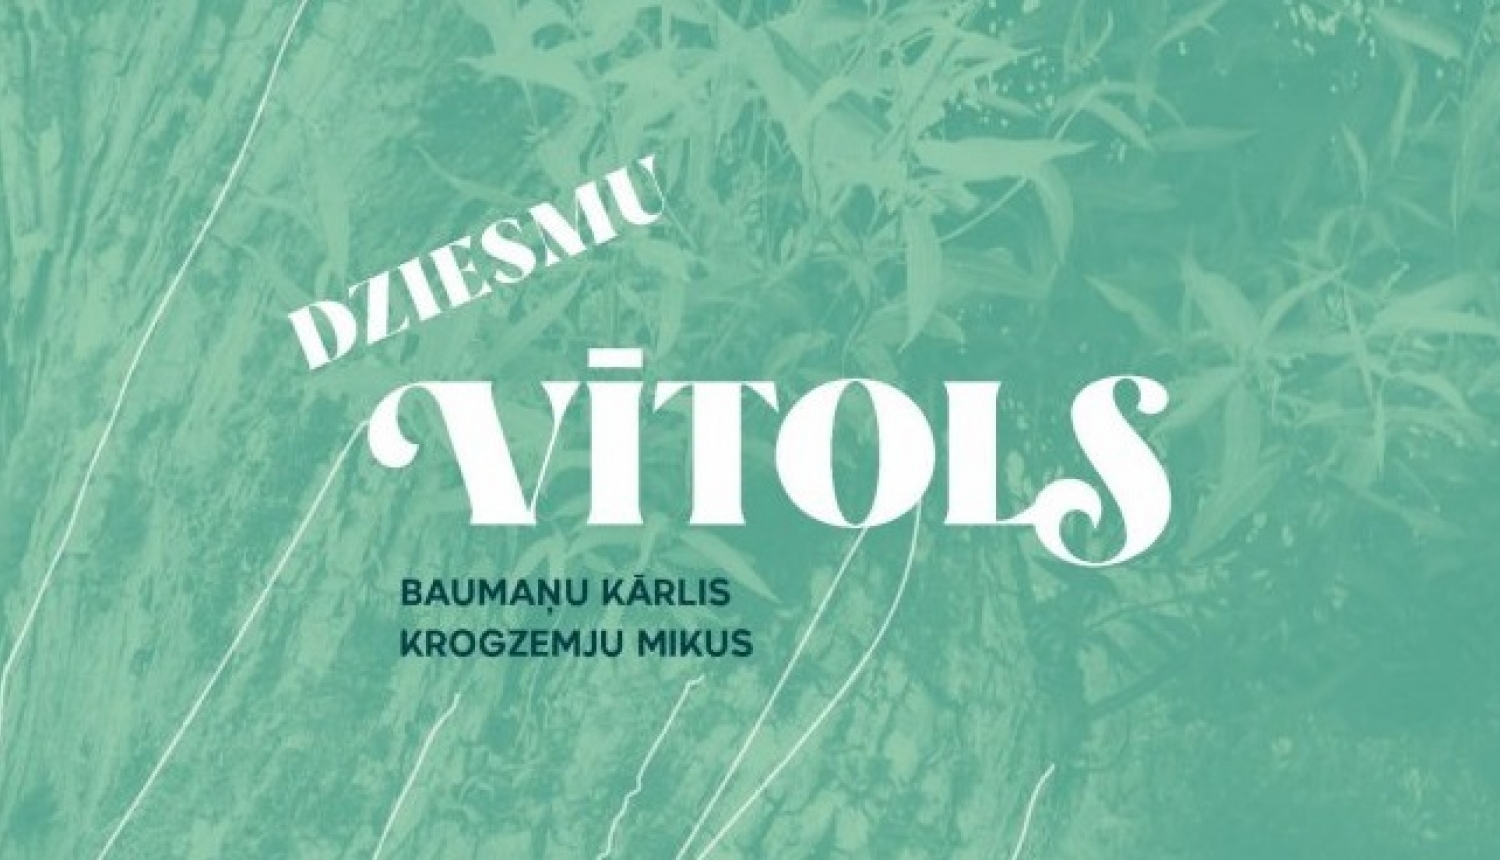 Latvijas Nacionālajā bibliotēkā notiks dziesmu izlases krājuma "Dziesmu vītols" izdošanai veltītās izstādes atklāšana